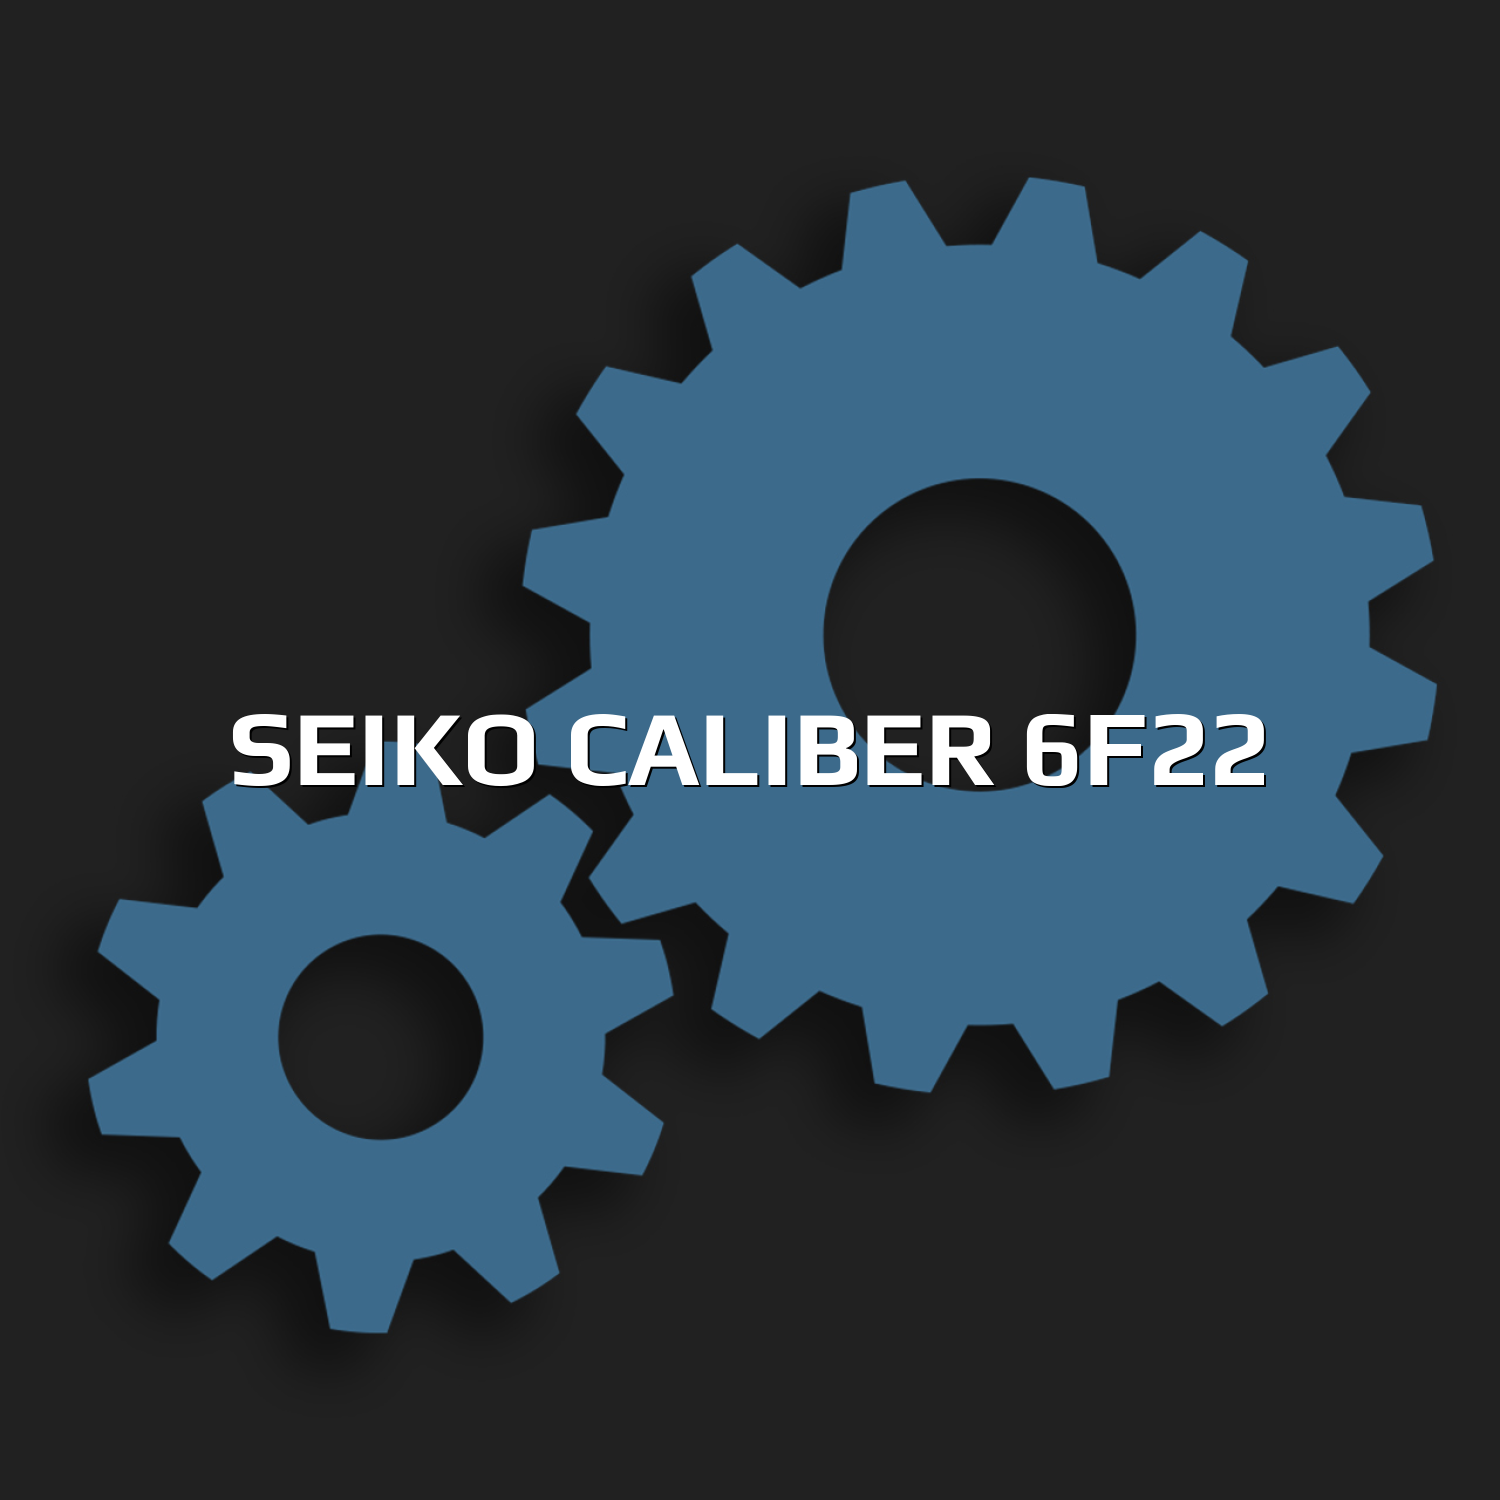 Seiko Caliber 6F22